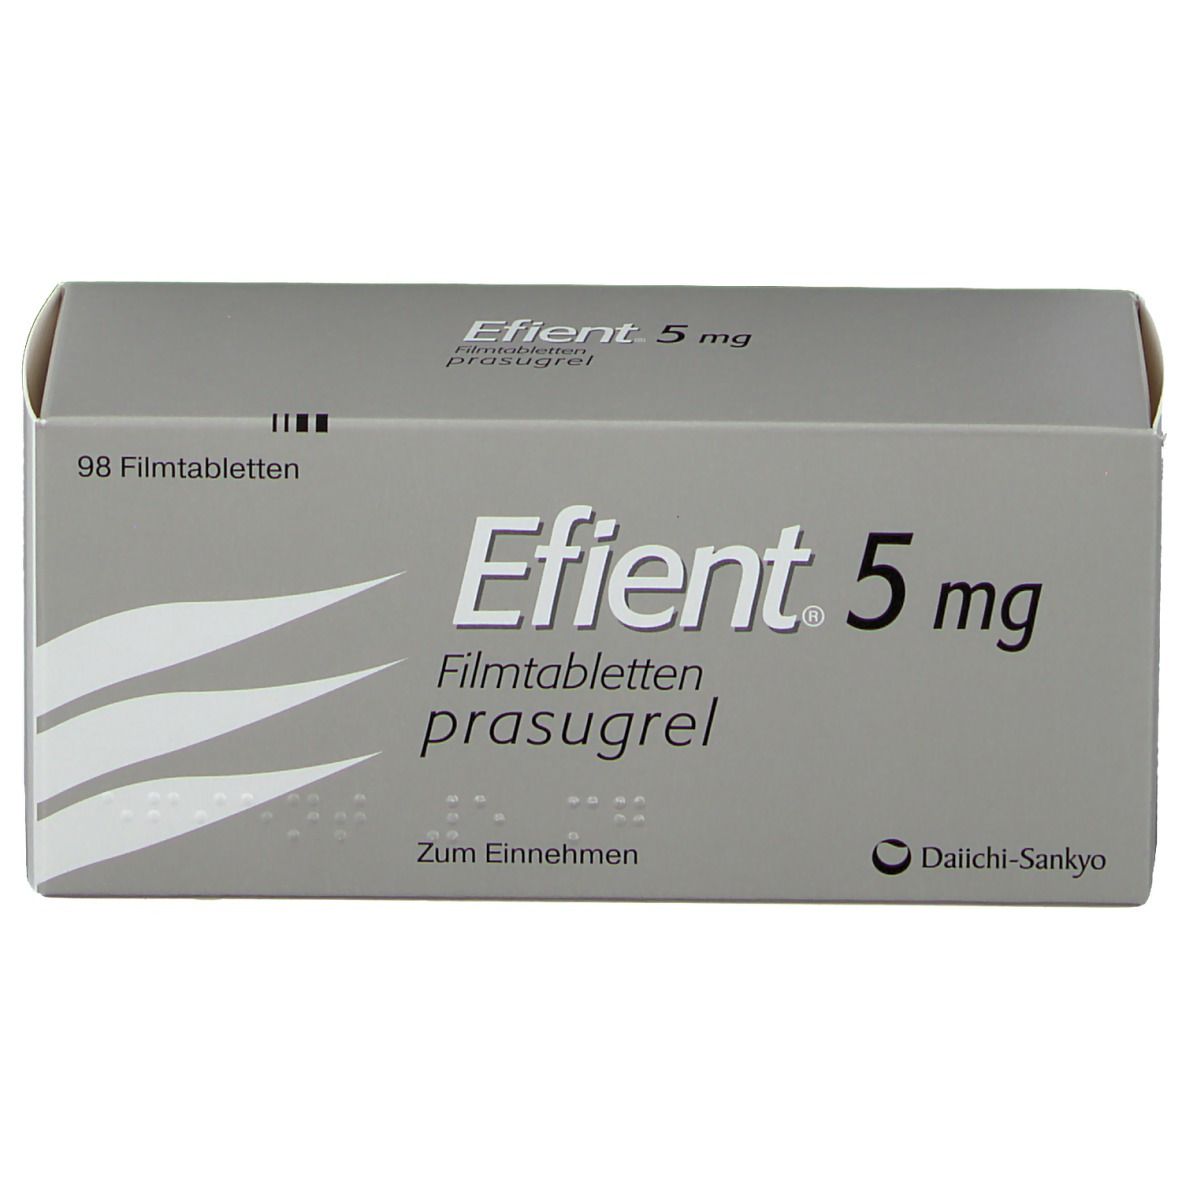 EFIENT 5 mg Filmtabletten